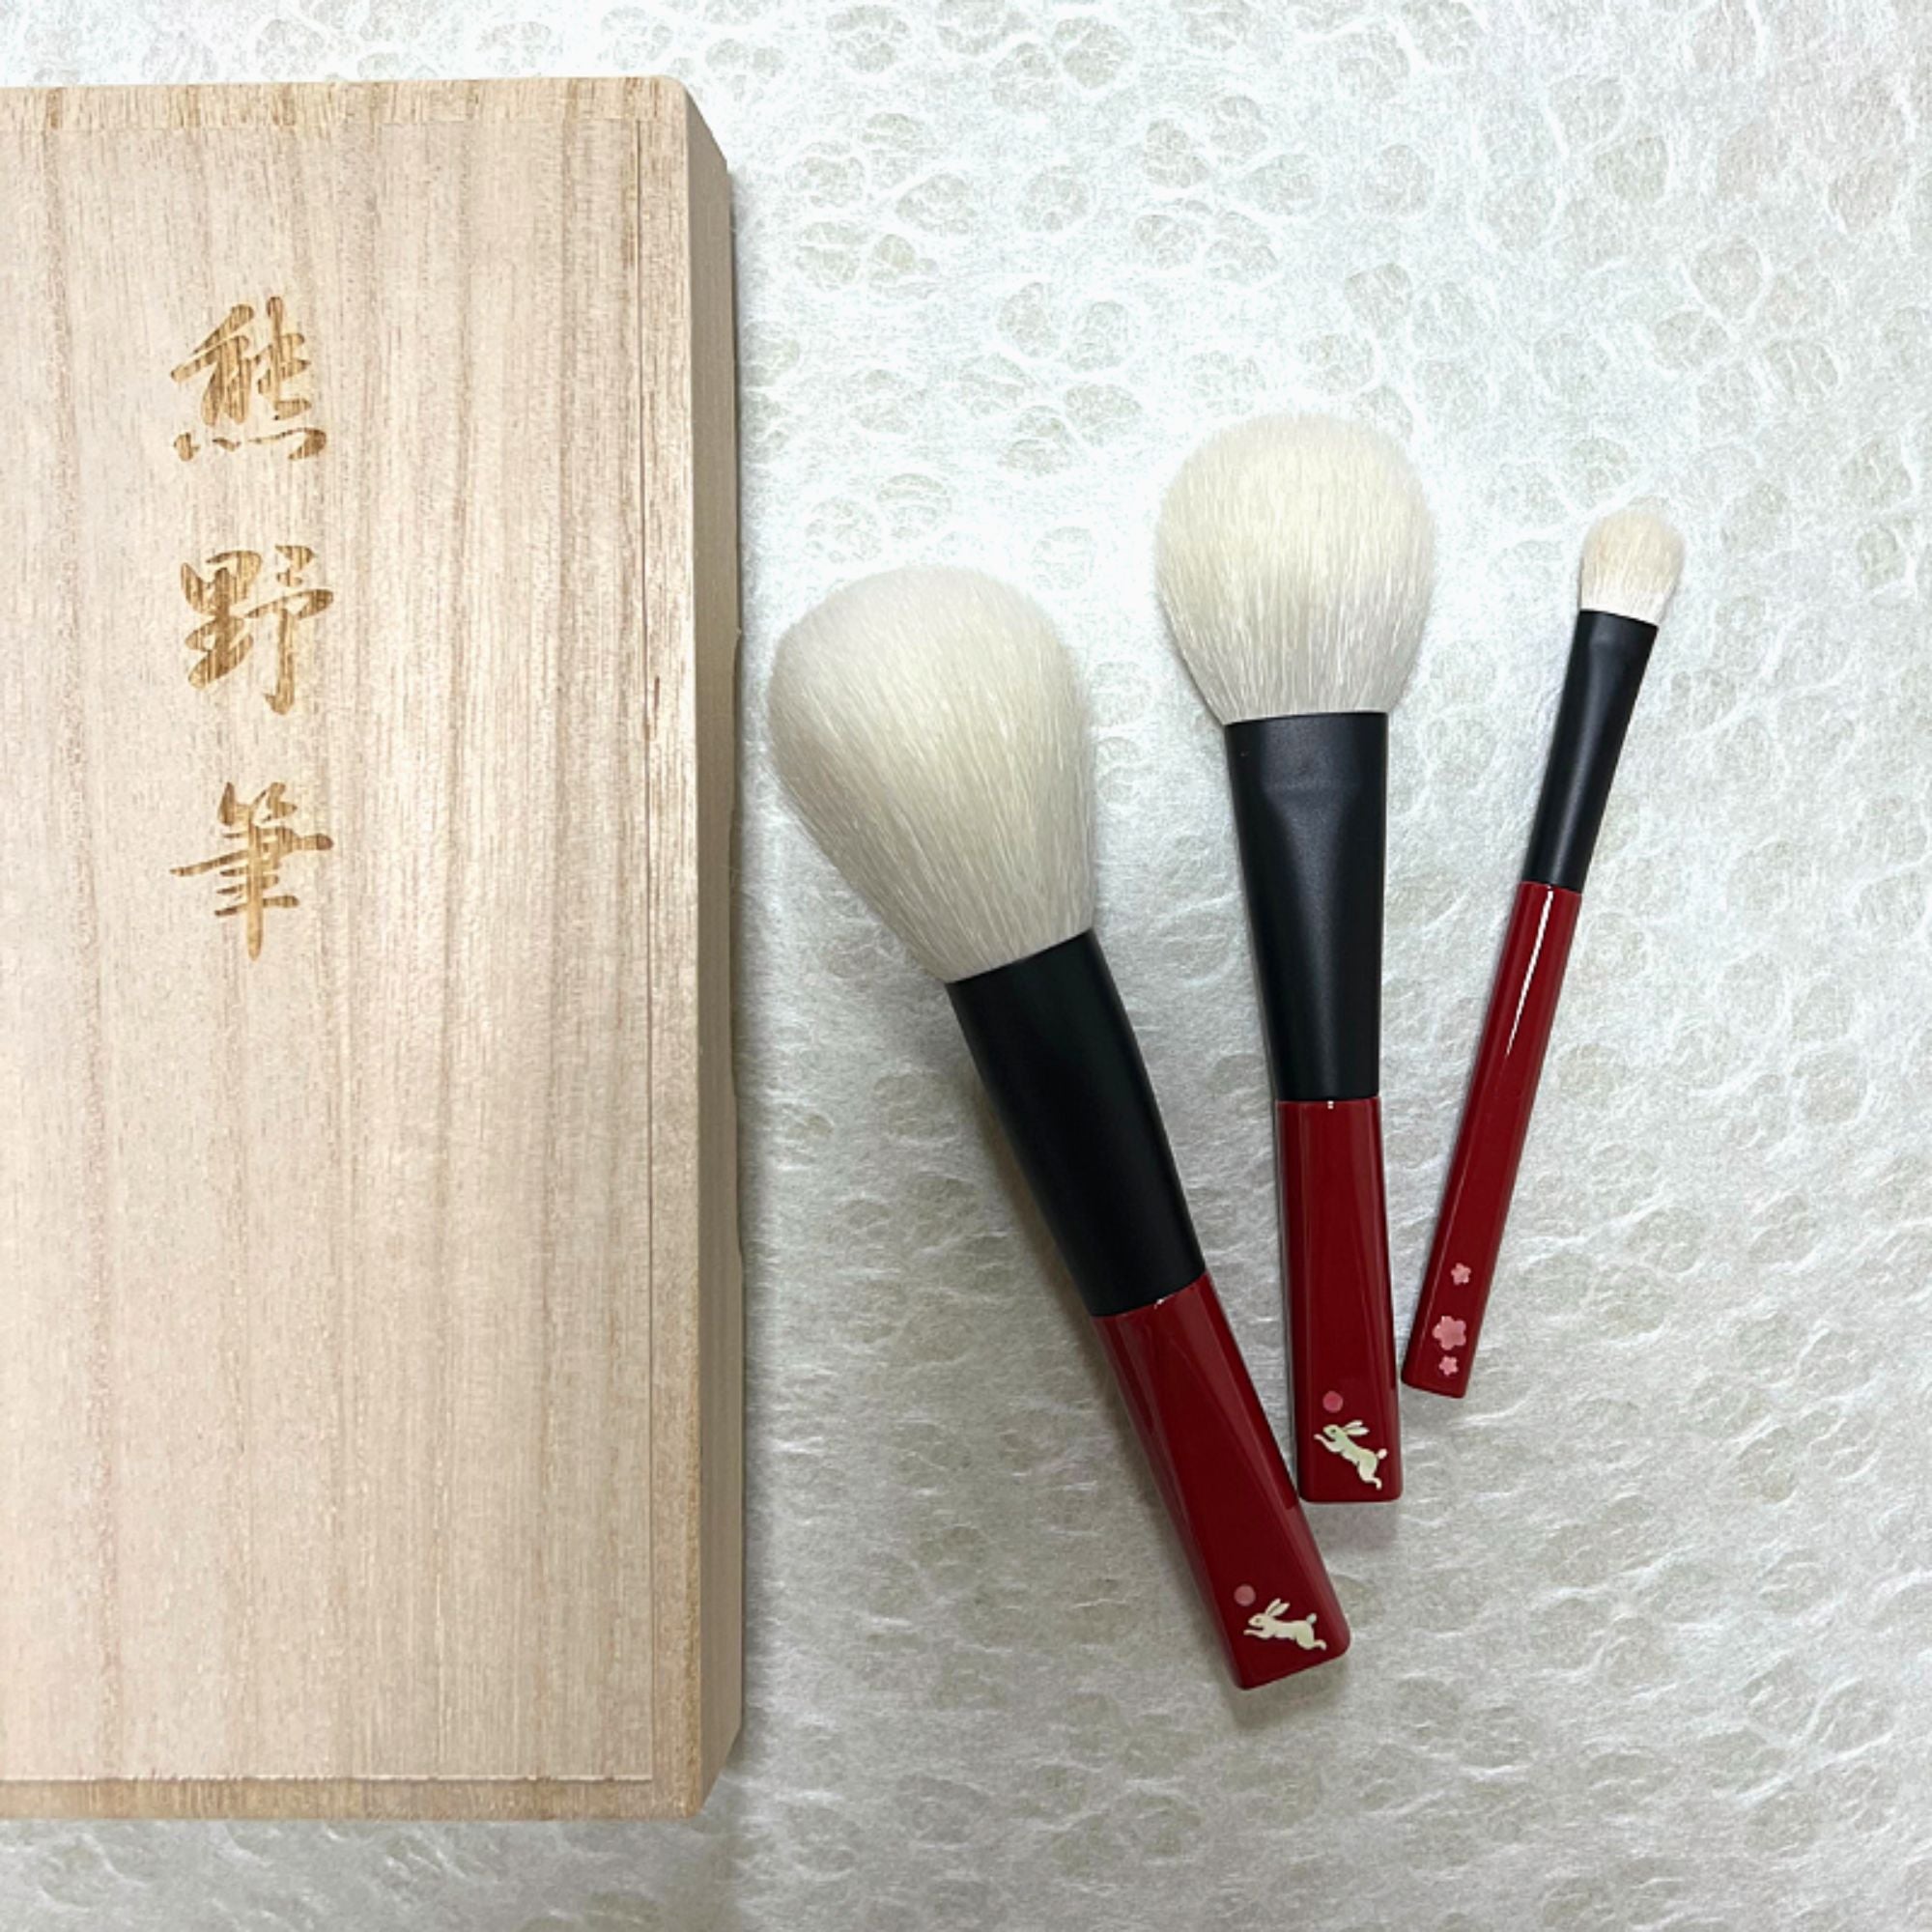 Koyudo Year of the Rabbit 3-Brush Set, Raden Design (Limited Edition) - Fude Beauty, Japanese Makeup Brushes